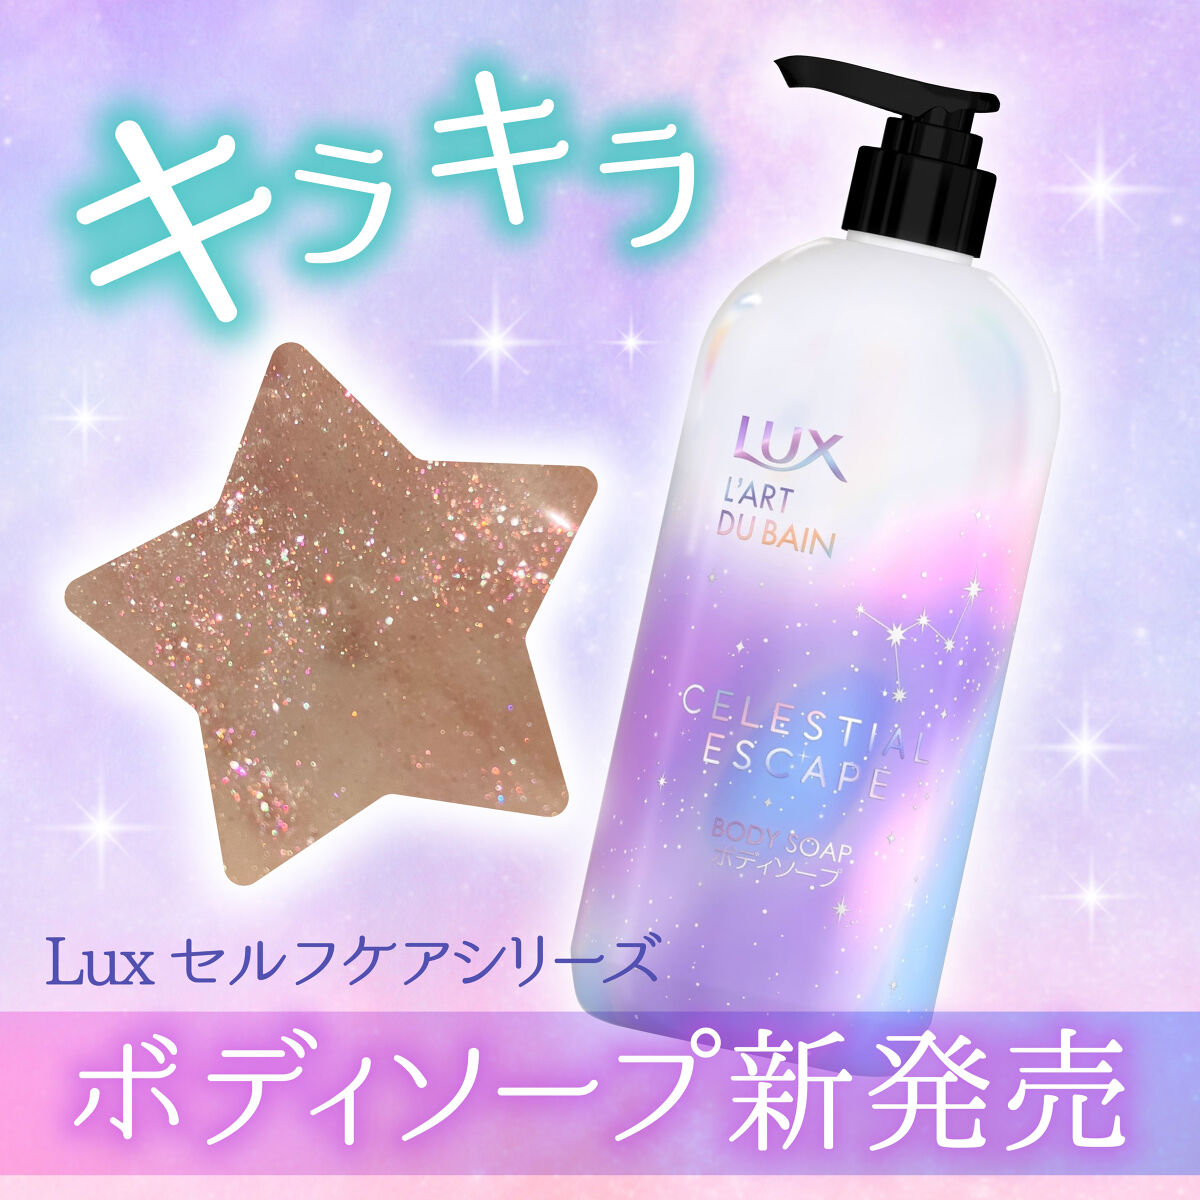 甘皮 on LIPS 「【キラキラボディソープ】Luxのセルフケアシリーズが新発売！ ..」 LIPS